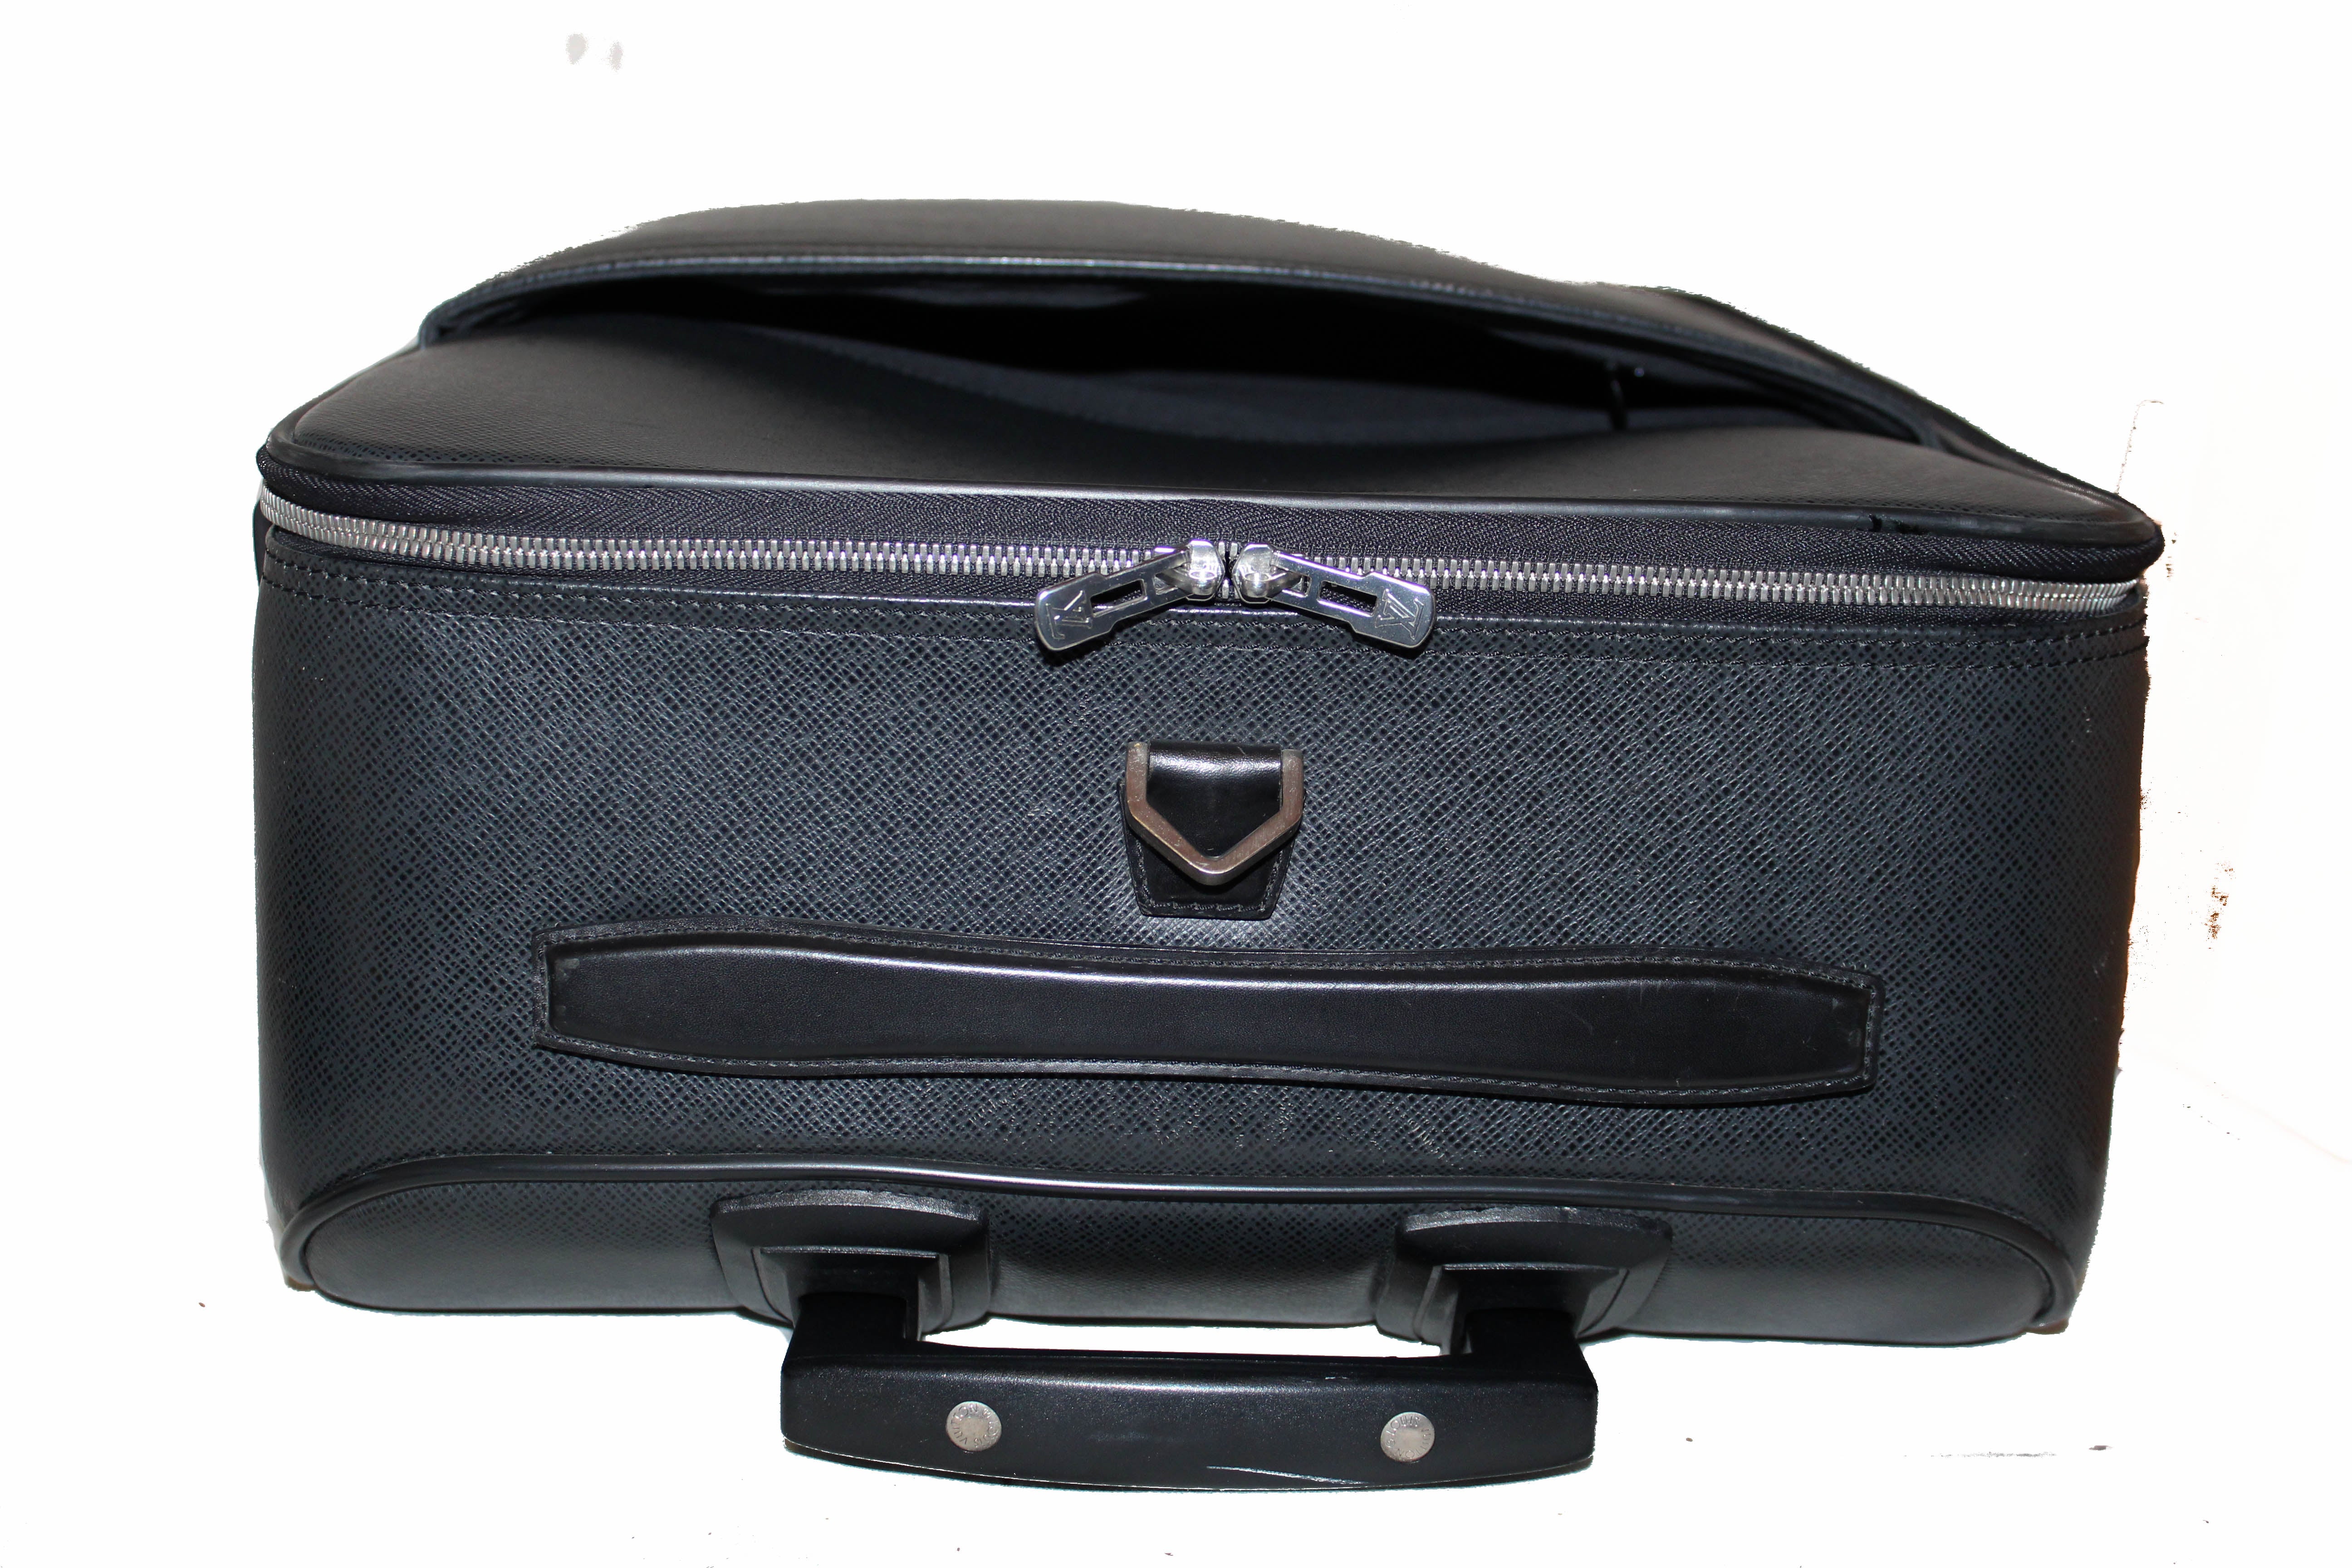 Authentic Louis Vuitton Black Taiga Leather Pegase 55 Luggage